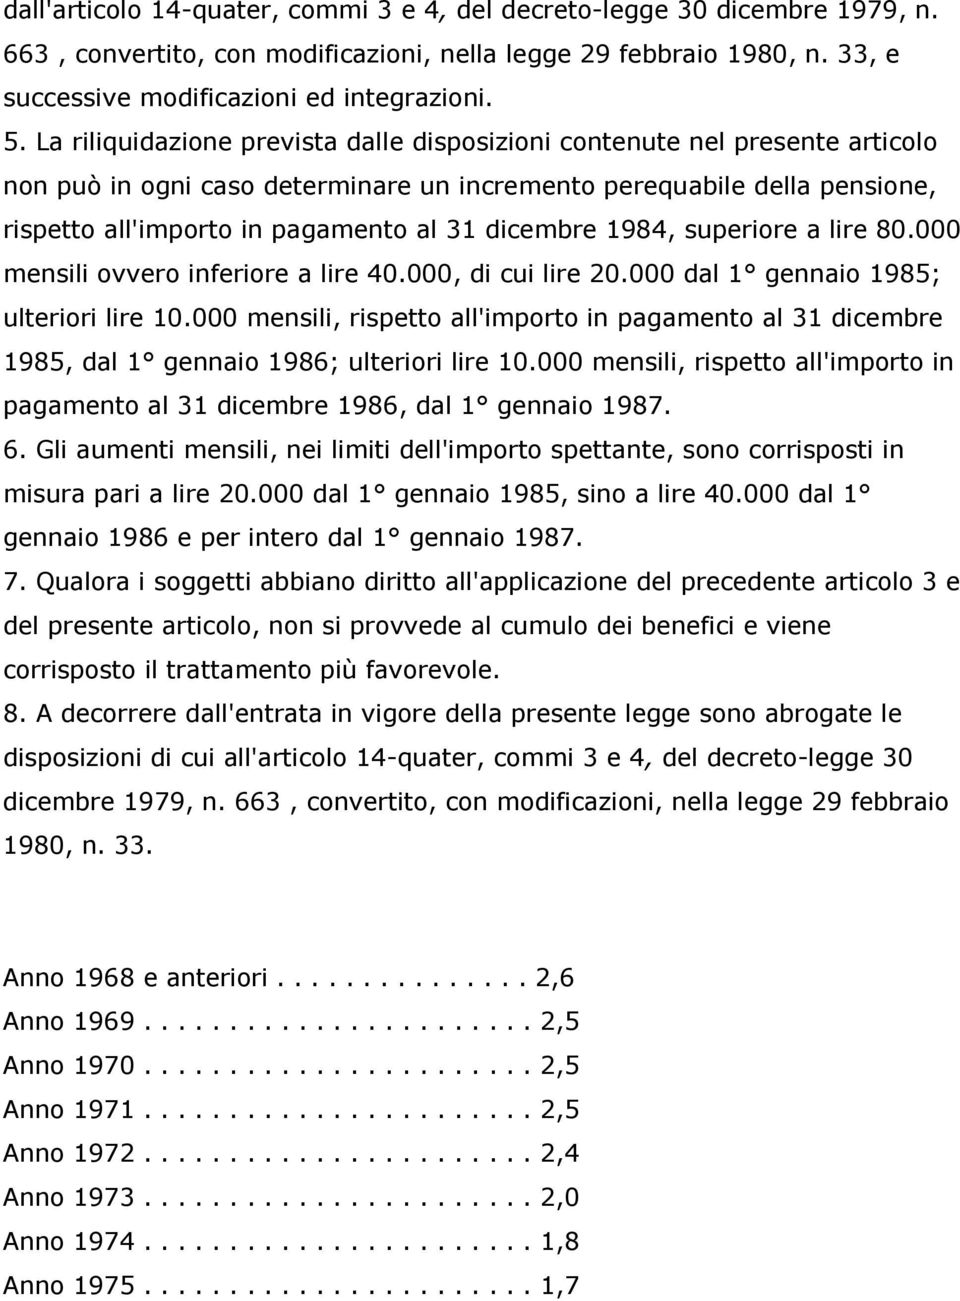 dicembre 1984, superiore a lire 80.000 mensili ovvero inferiore a lire 40.000, di cui lire 20.000 dal 1 gennaio 1985; ulteriori lire 10.